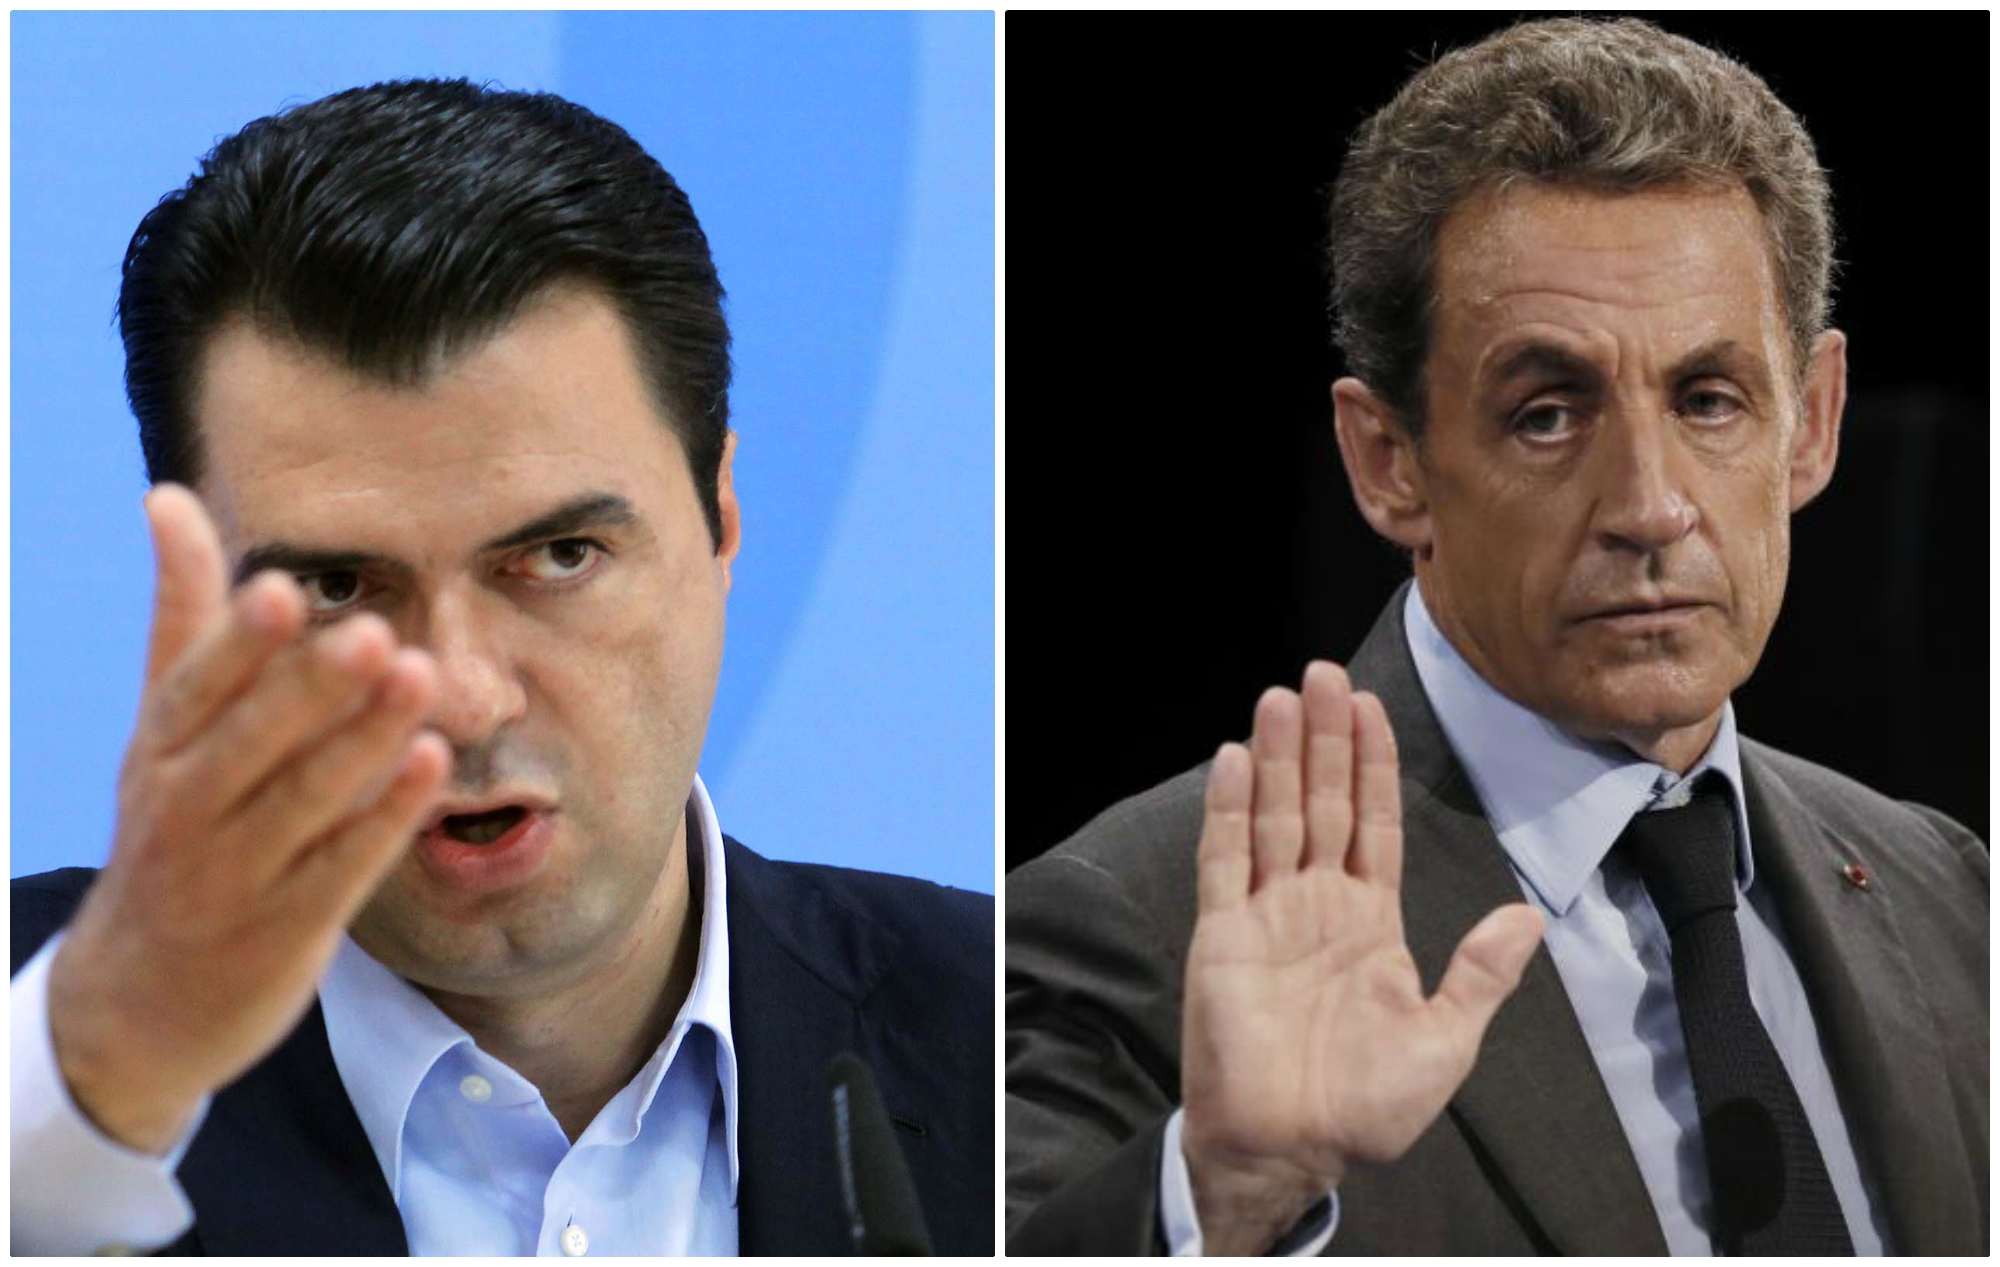 Financime të dyshimta të fushatës/ Shoqërohet në polici ish-presidenti Sarkozy, Basha u financua nga rusët, por…